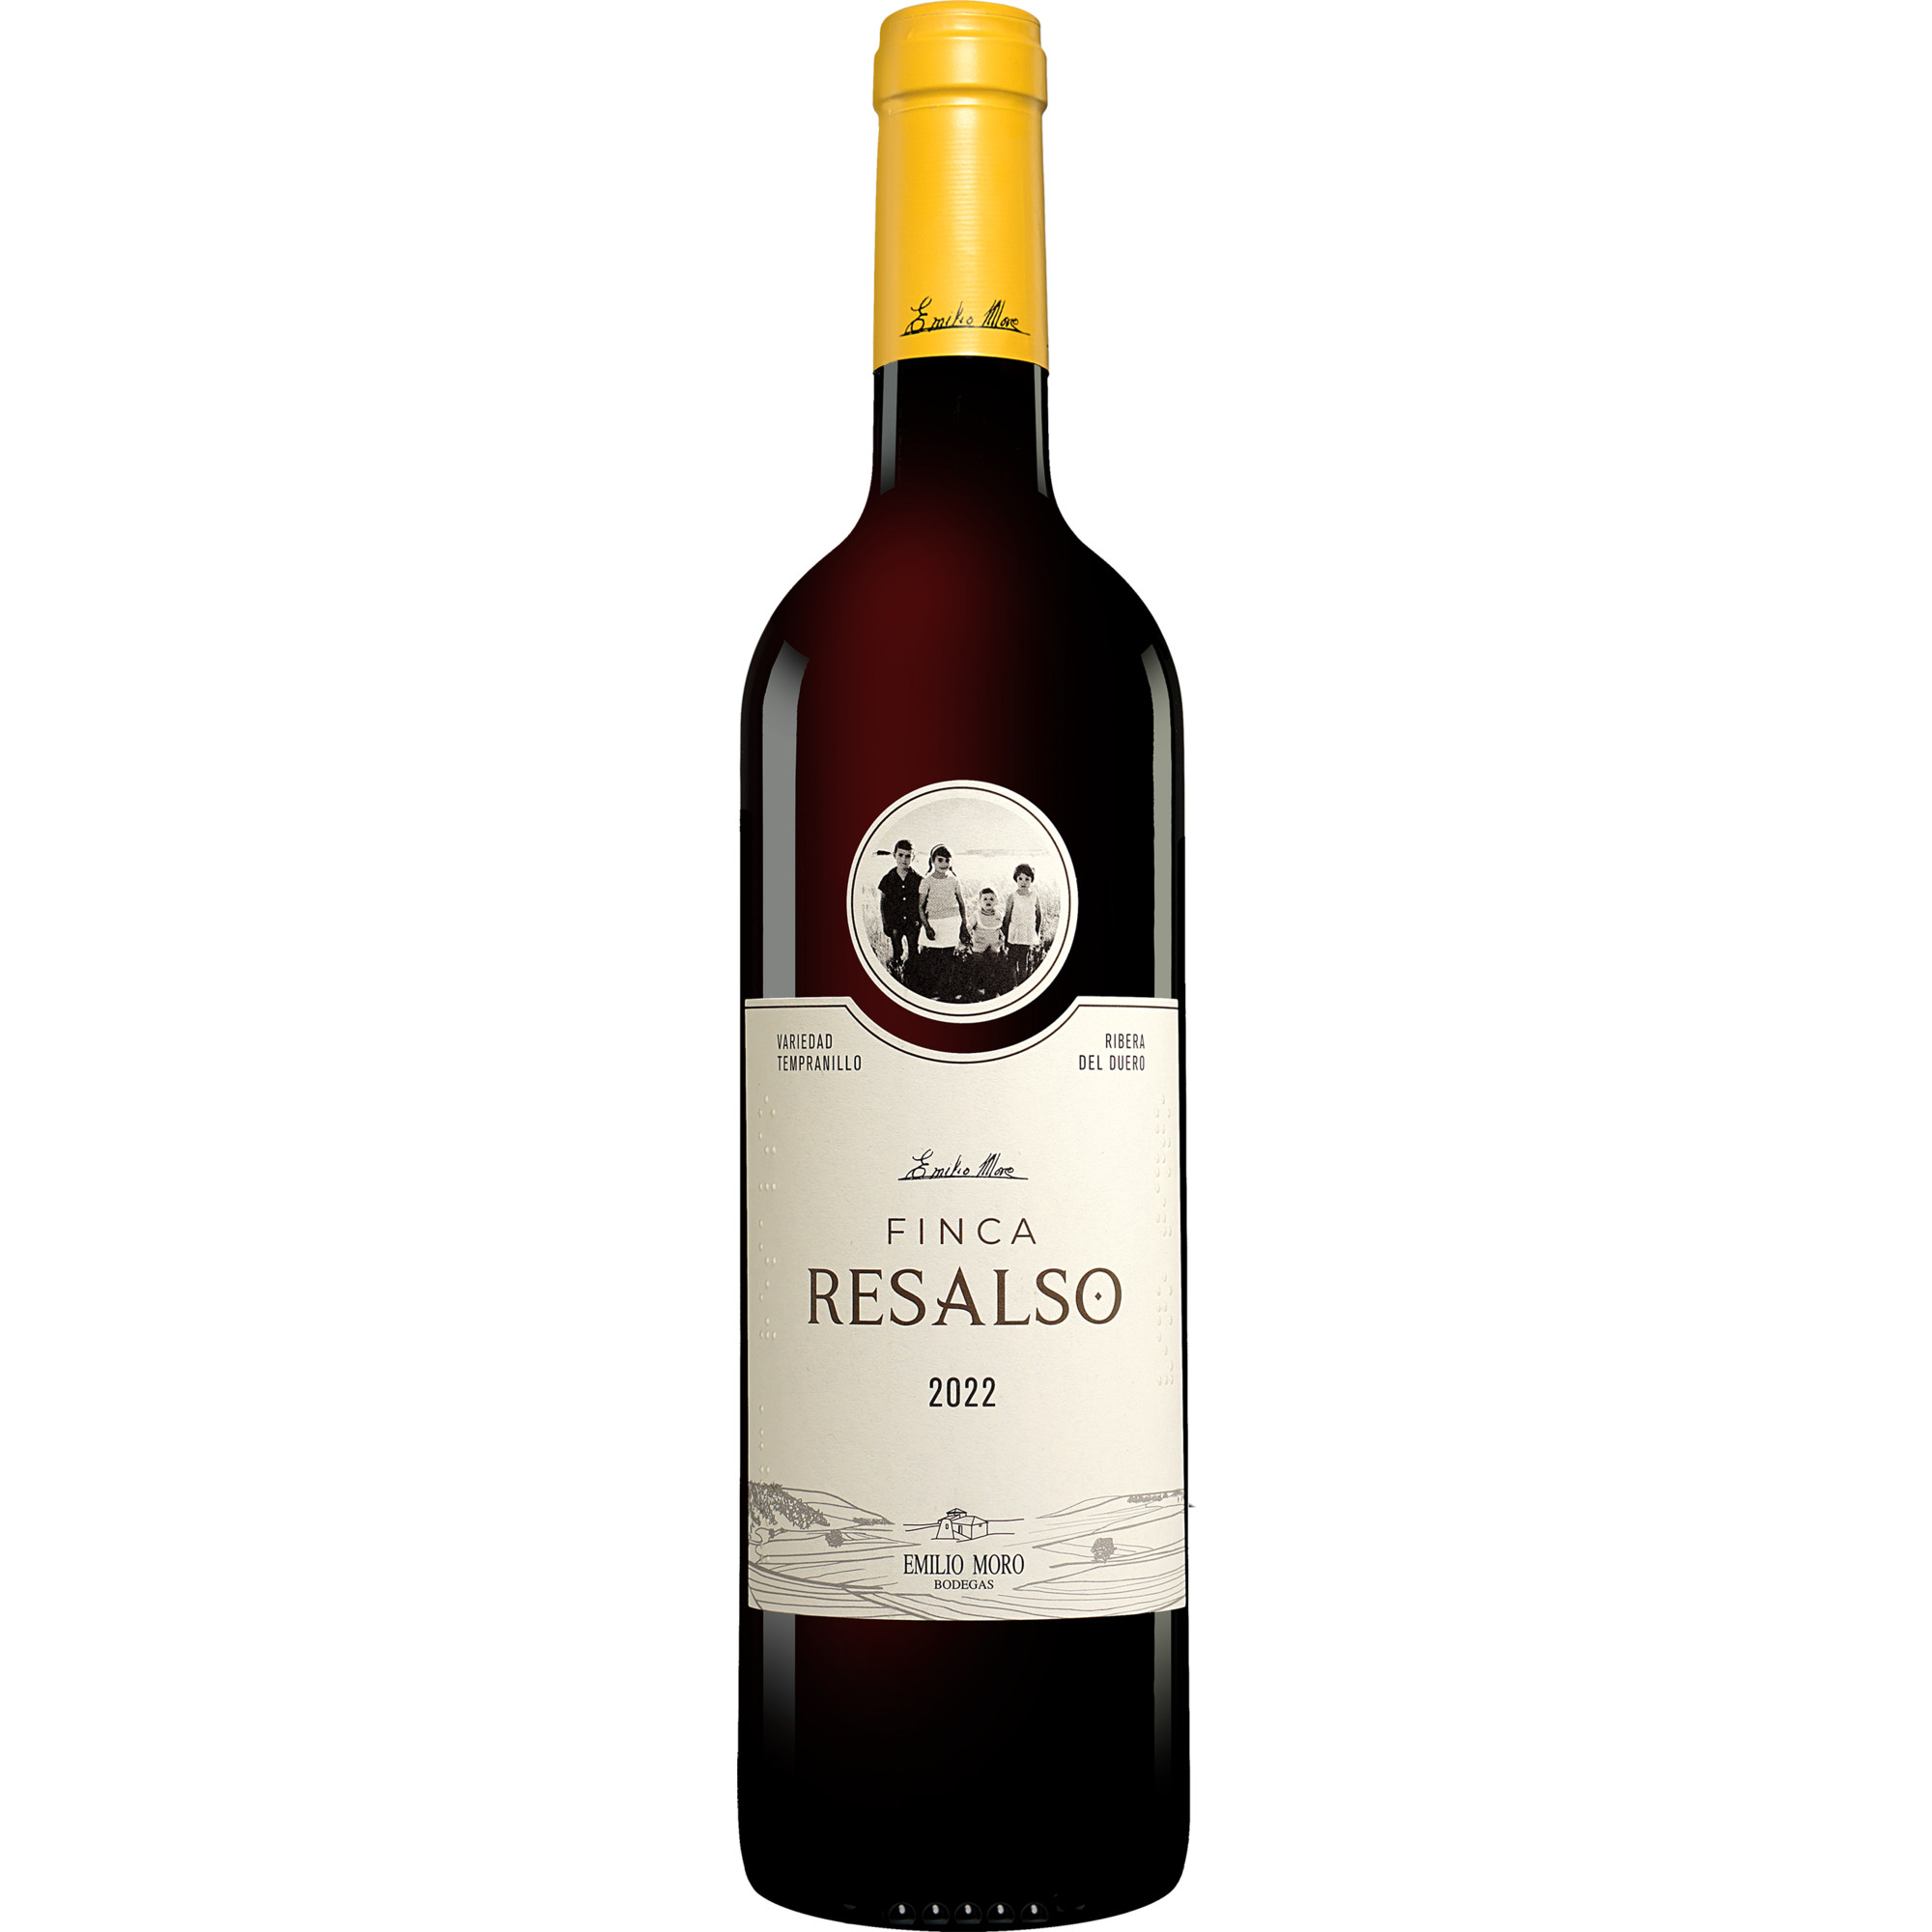 Emilio Moro »Finca Resalso« 2022  014.5% Vol. Rotwein Trocken aus Spanien